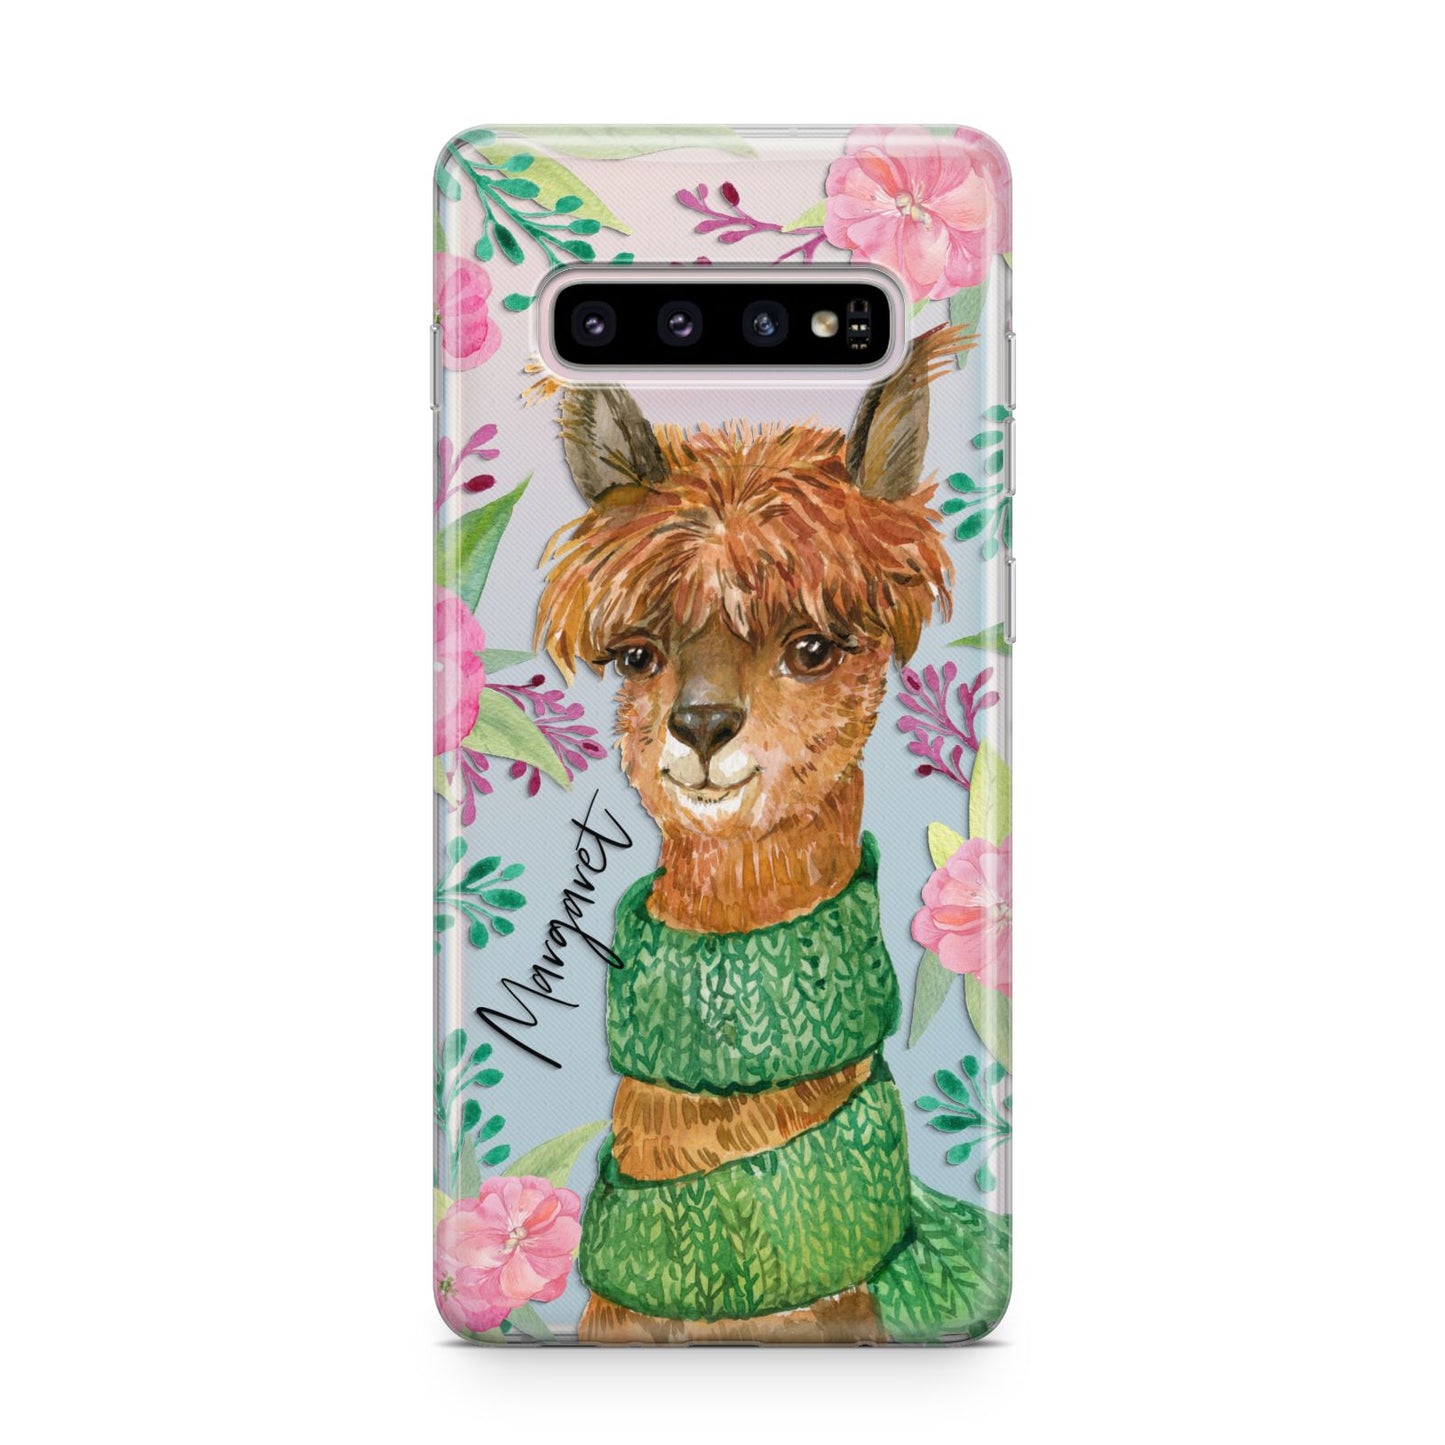 Personalised Alpaca Samsung Galaxy S10 Plus Case